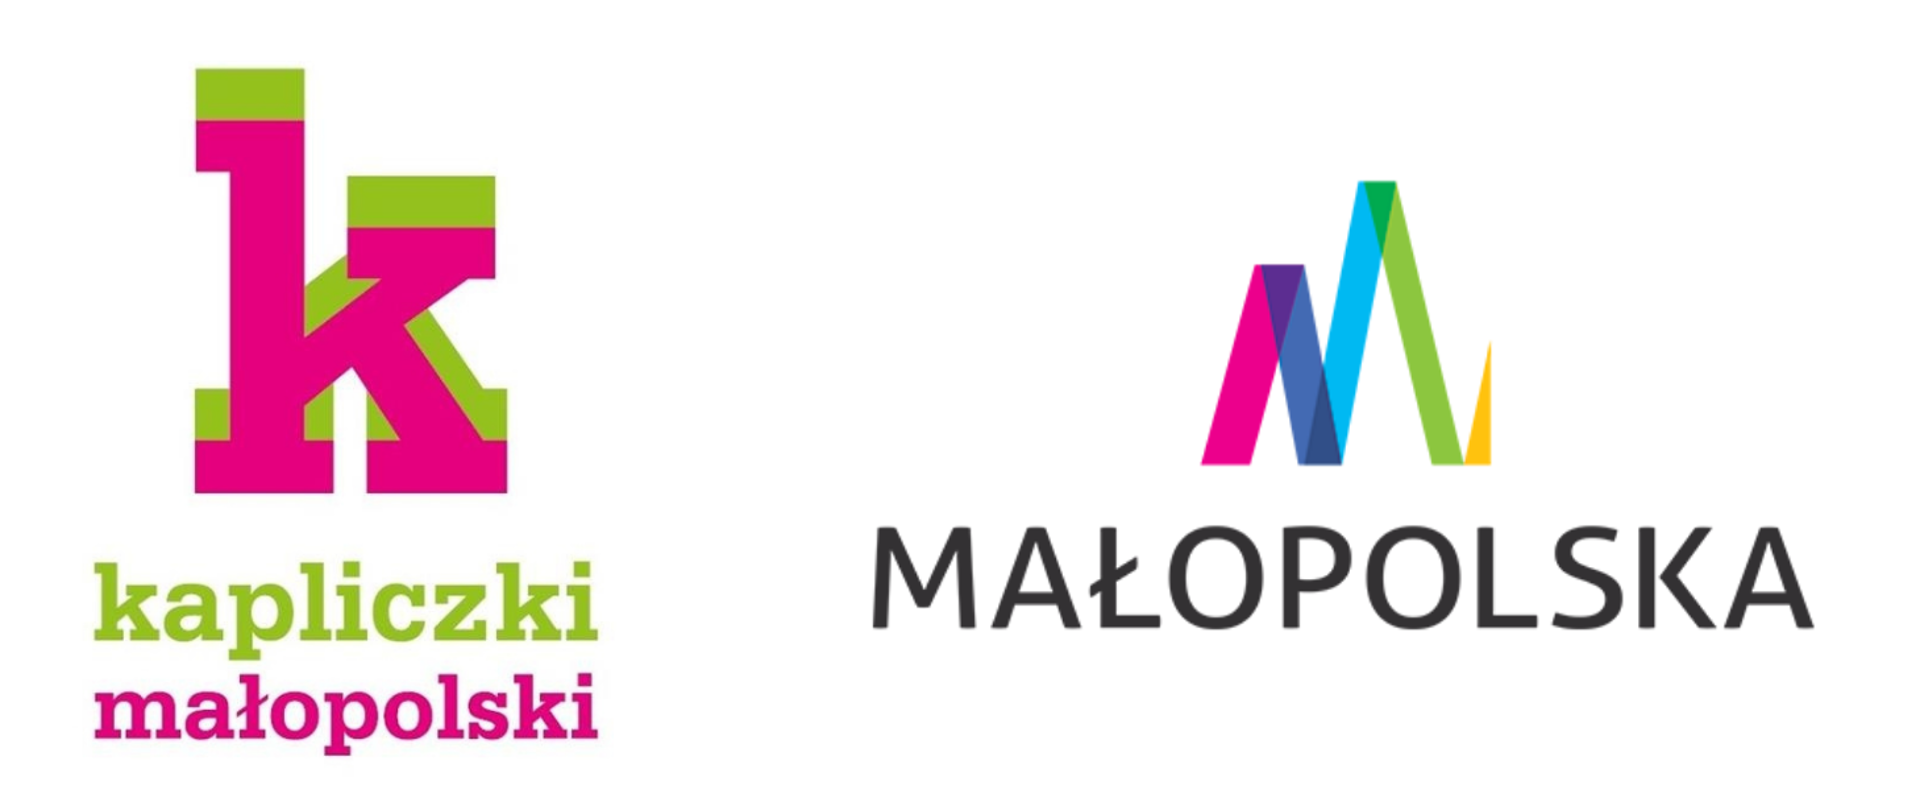 Logo programu "kapliczki małopolski" oraz Małopolski